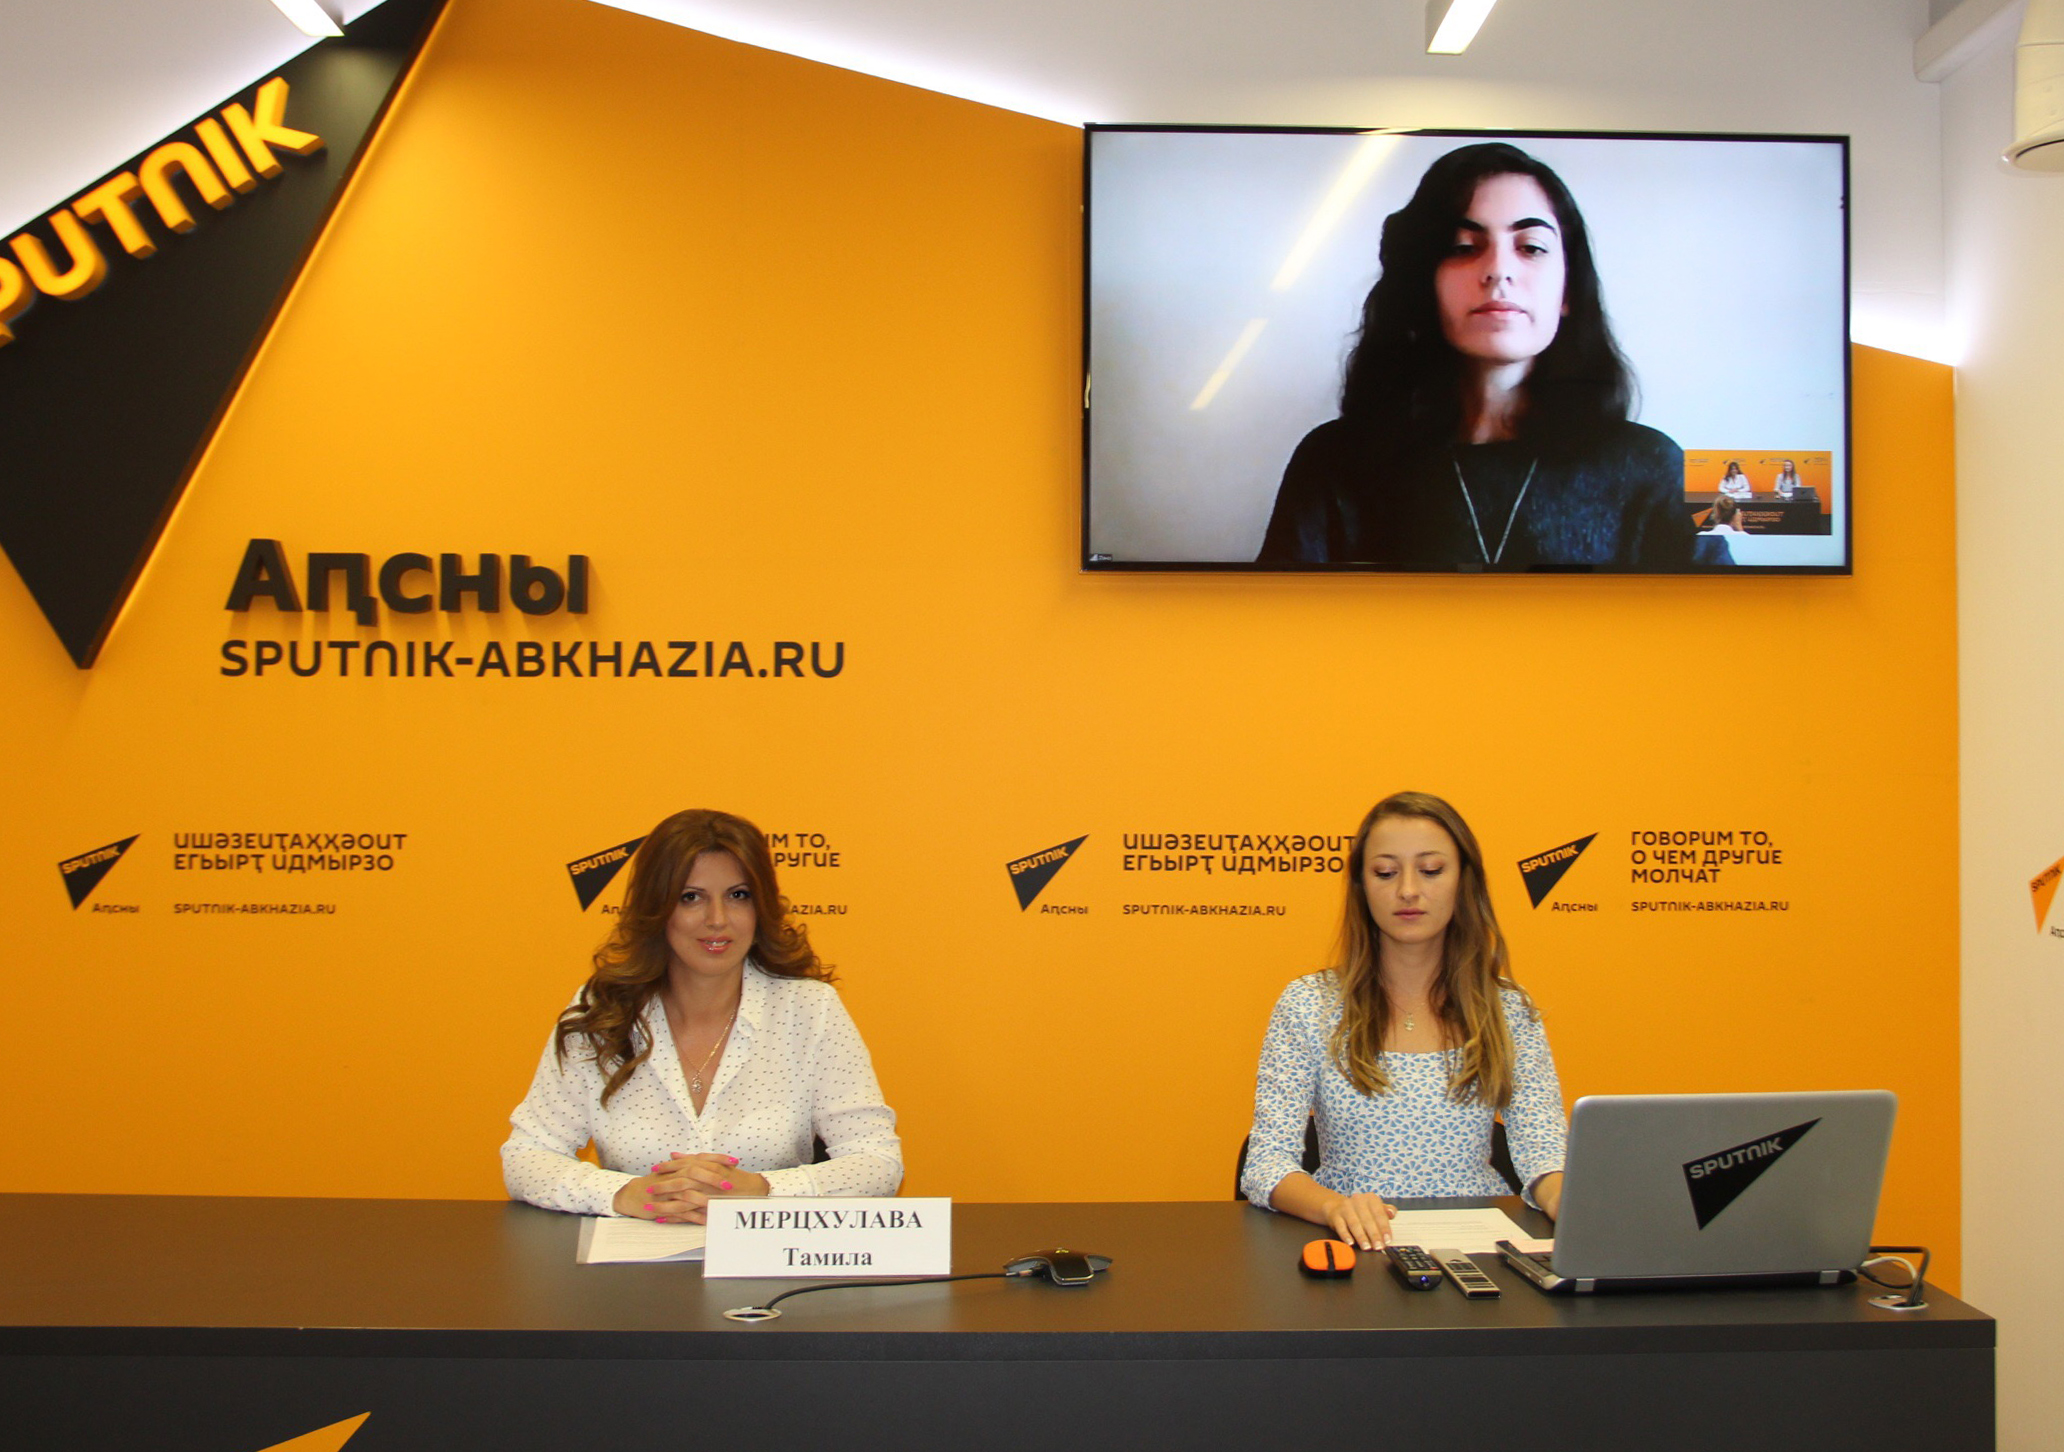 Вечер абхазской культуры в Америке и пресс-тур: сотрудники рассказали о работе ТПП Абхазии